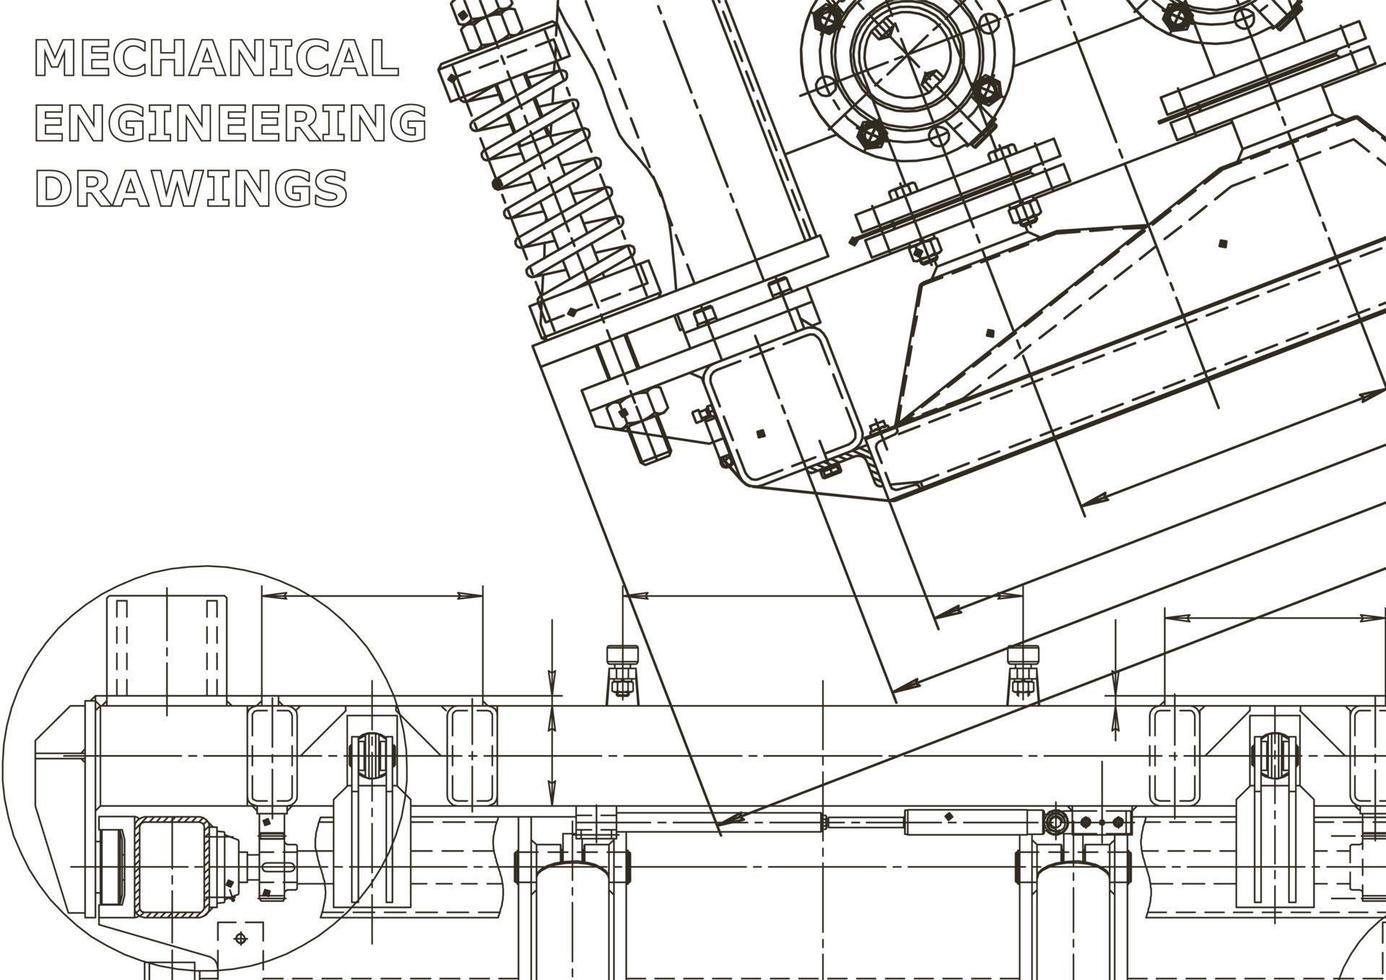 cubrir. dibujos de ingeniería de vectores. fabricación de instrumentos mecánicos. antecedentes técnicos abstractos. ilustracion tecnica vector